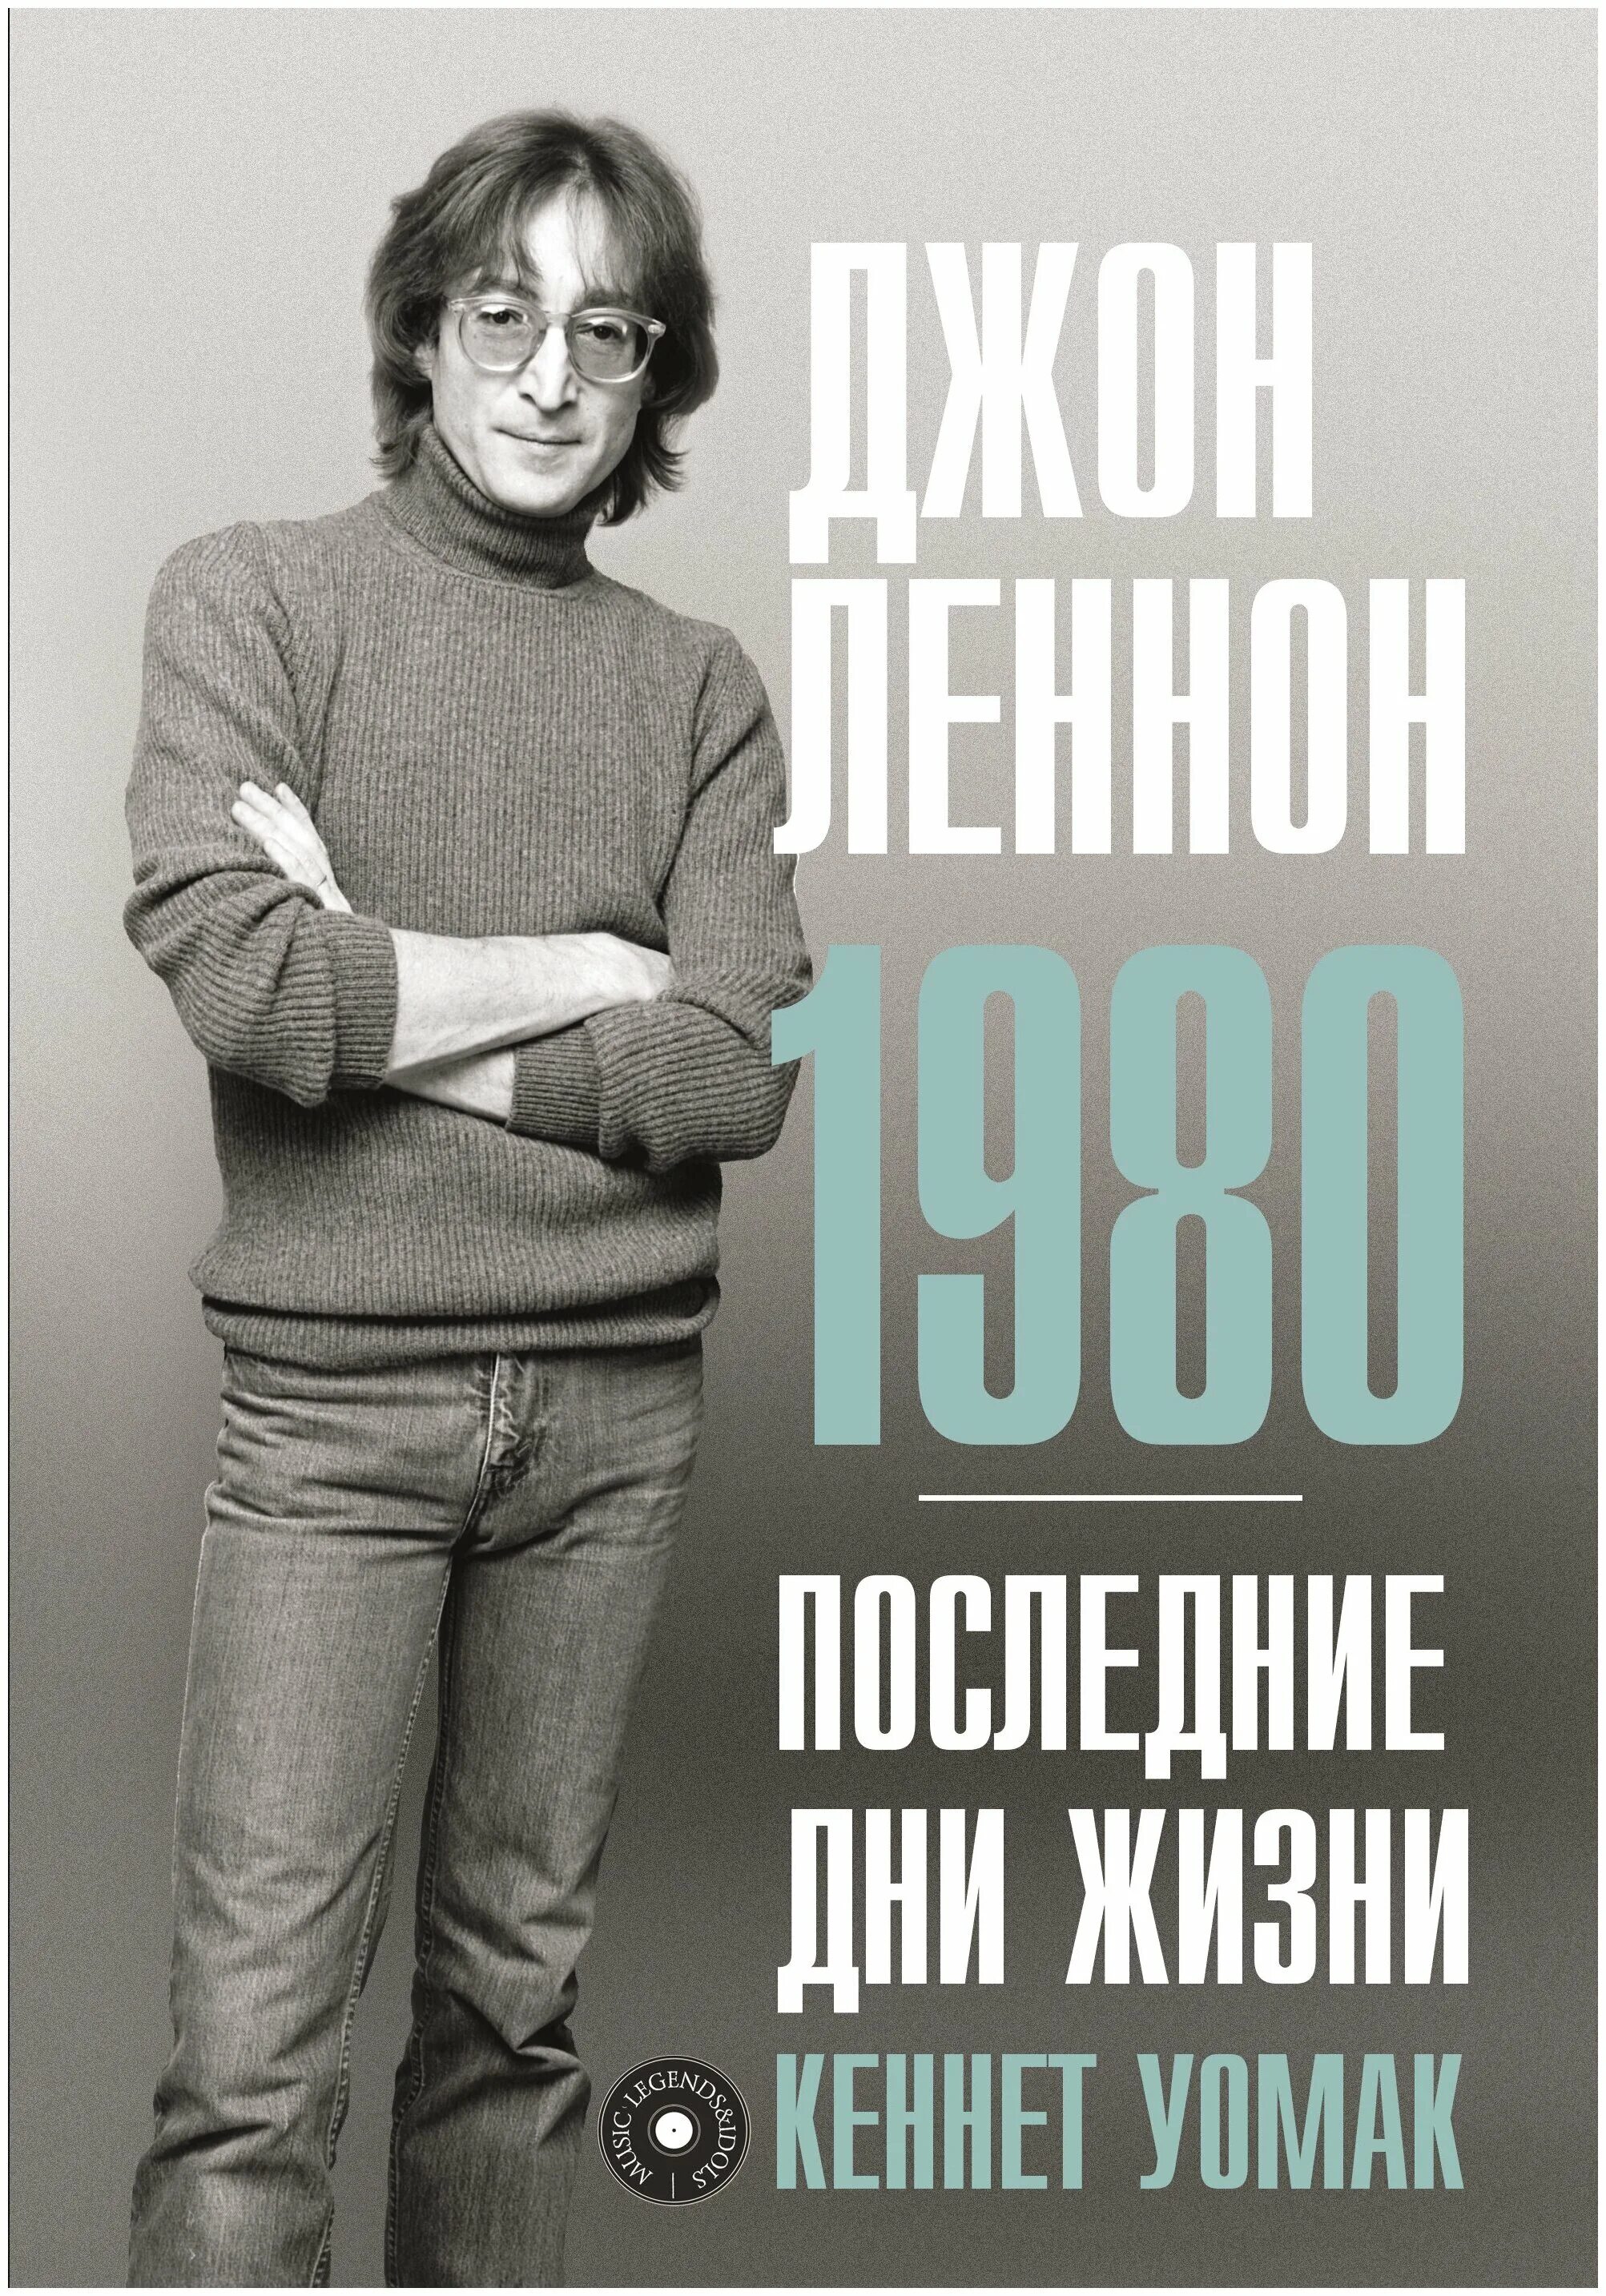 Джон леннон книги. Джон Леннон 1980. Джон Леннон 1980 последние дни жизни Уомак. Книги о Ленноне. Книги про Джона Леннона.